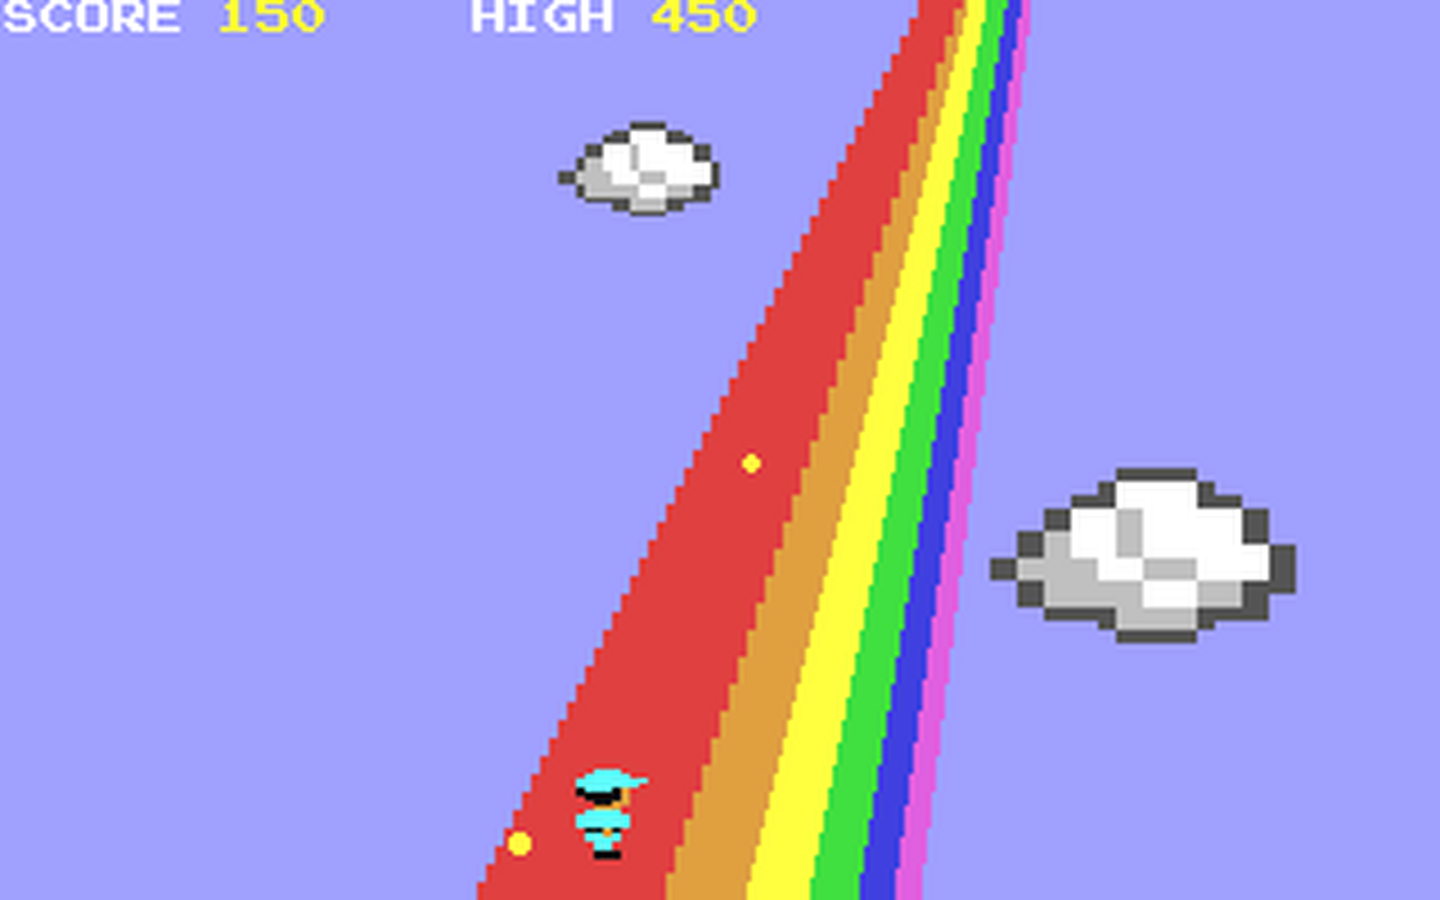 C64 GameBase Rainbow_Edge_Run Reset_Magazine 2020